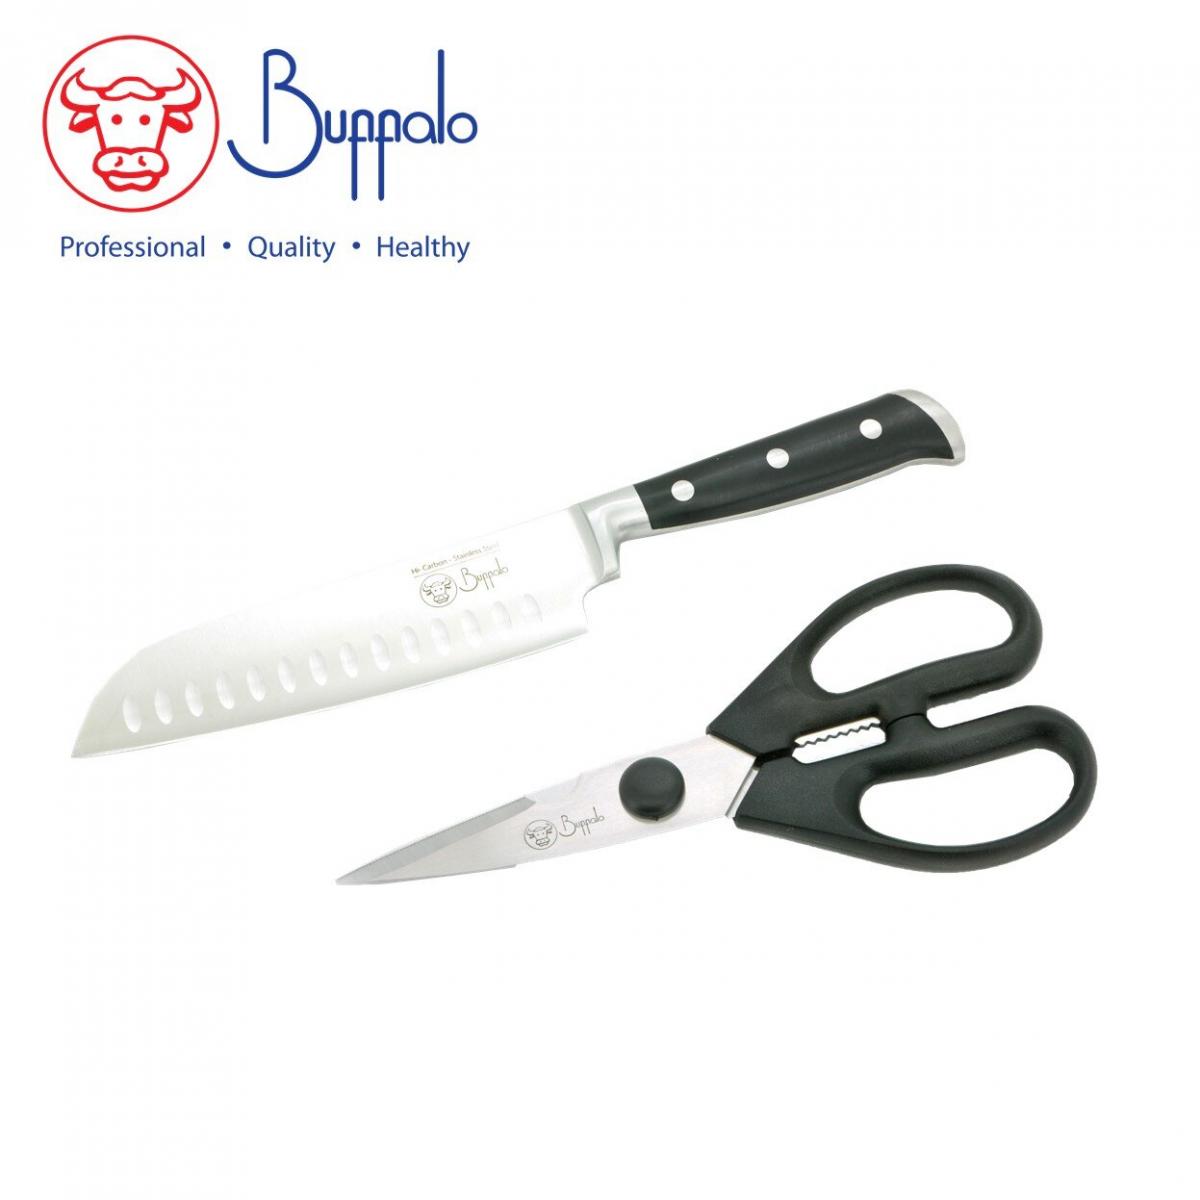 BUFFALO - 牛頭牌 日式廚師刀及廚剪套裝 596049